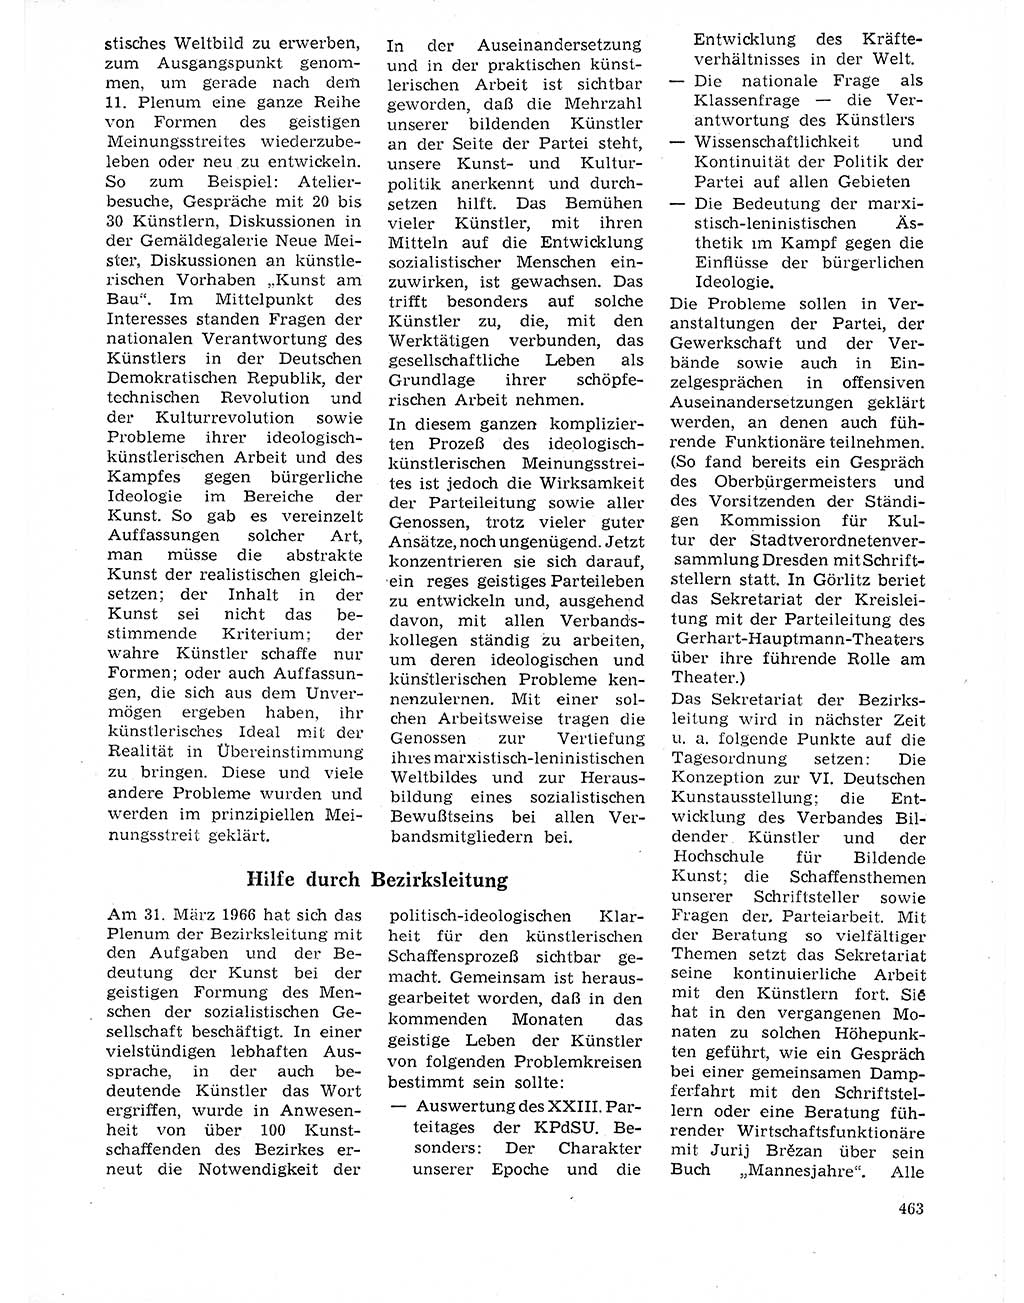 Neuer Weg (NW), Organ des Zentralkomitees (ZK) der SED (Sozialistische Einheitspartei Deutschlands) für Fragen des Parteilebens, 21. Jahrgang [Deutsche Demokratische Republik (DDR)] 1966, Seite 463 (NW ZK SED DDR 1966, S. 463)